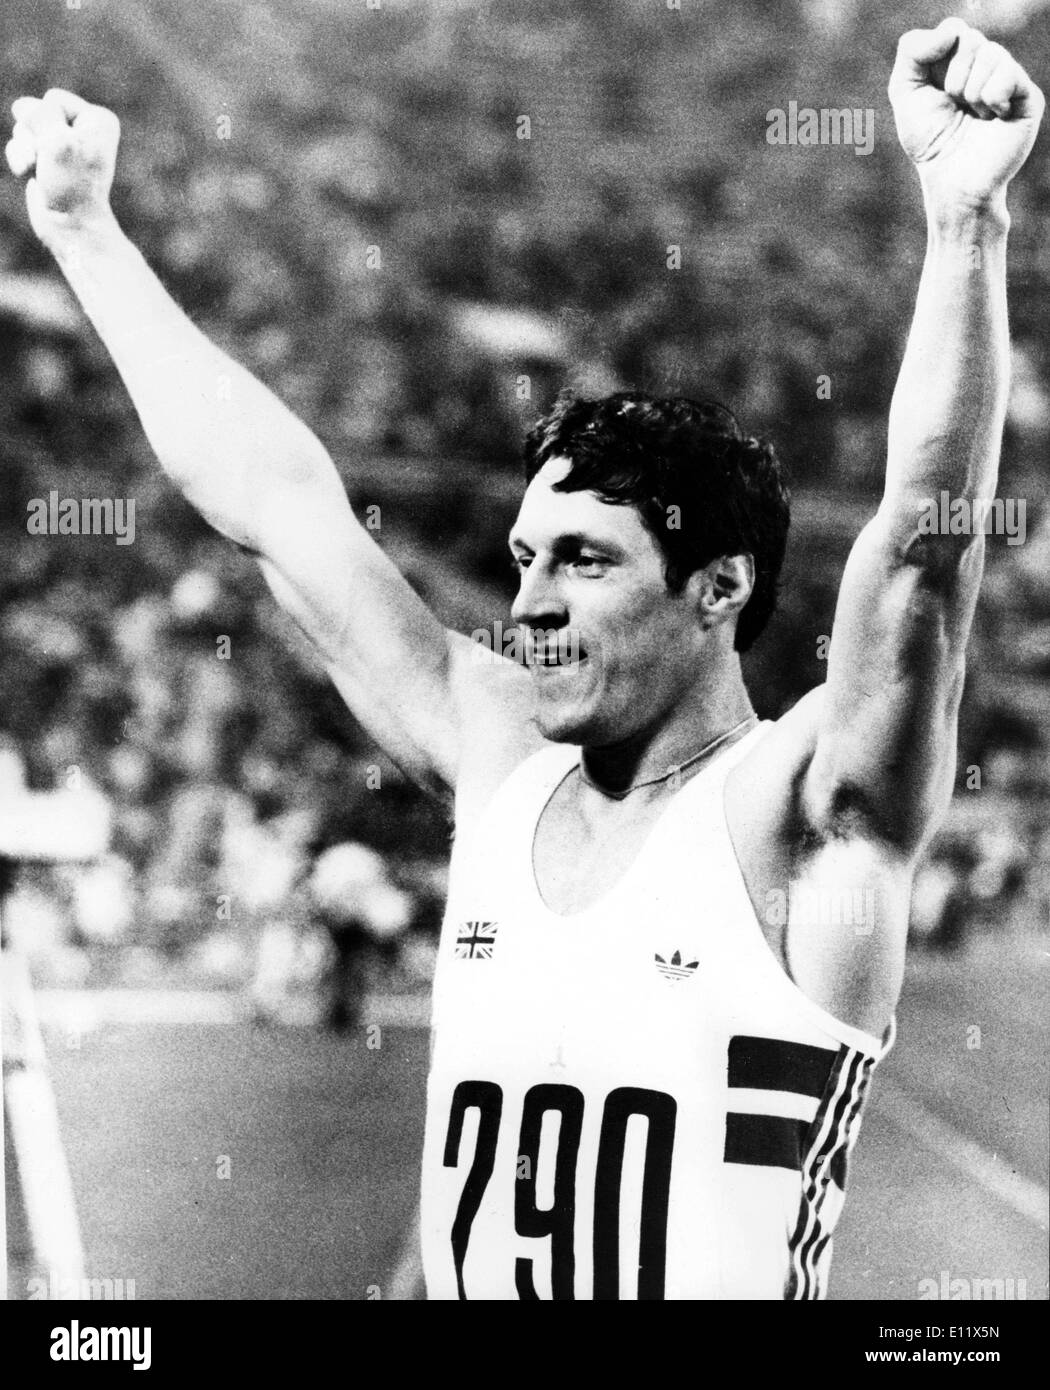 Jul 06, 1980; Mosca, Russia; in Gran Bretagna da Alan bene dopo aver vinto la finale di 100 metri. Foto Stock